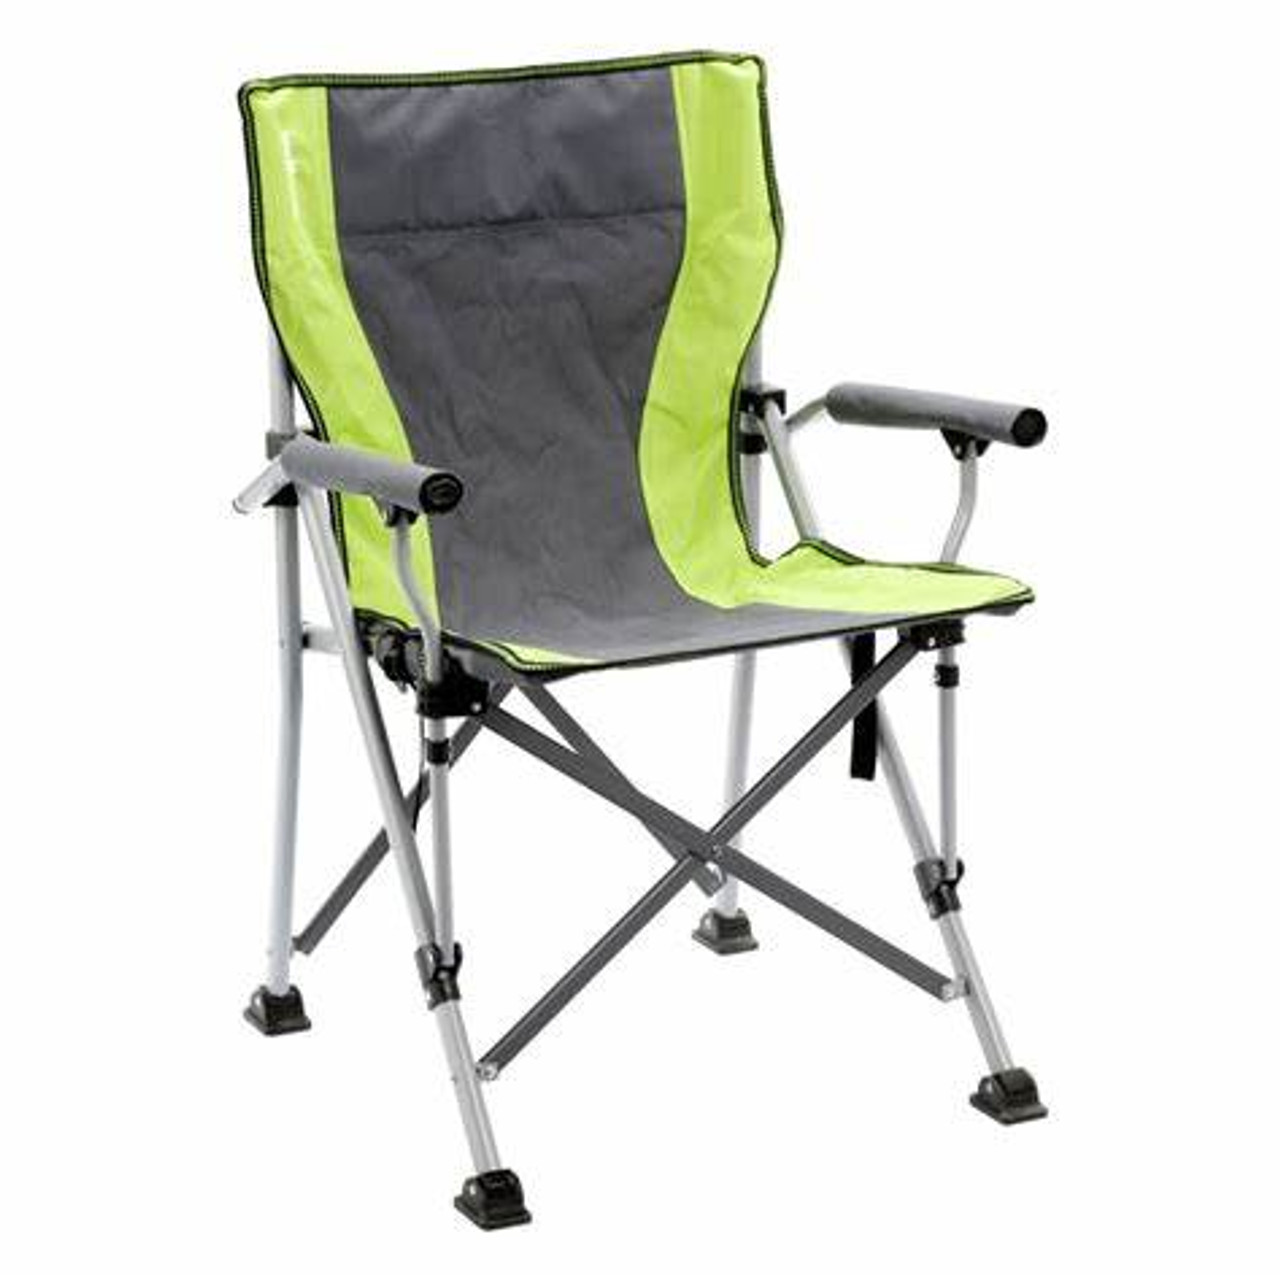 Brunner Raptor Adjustable Folding Portable Camping Chair